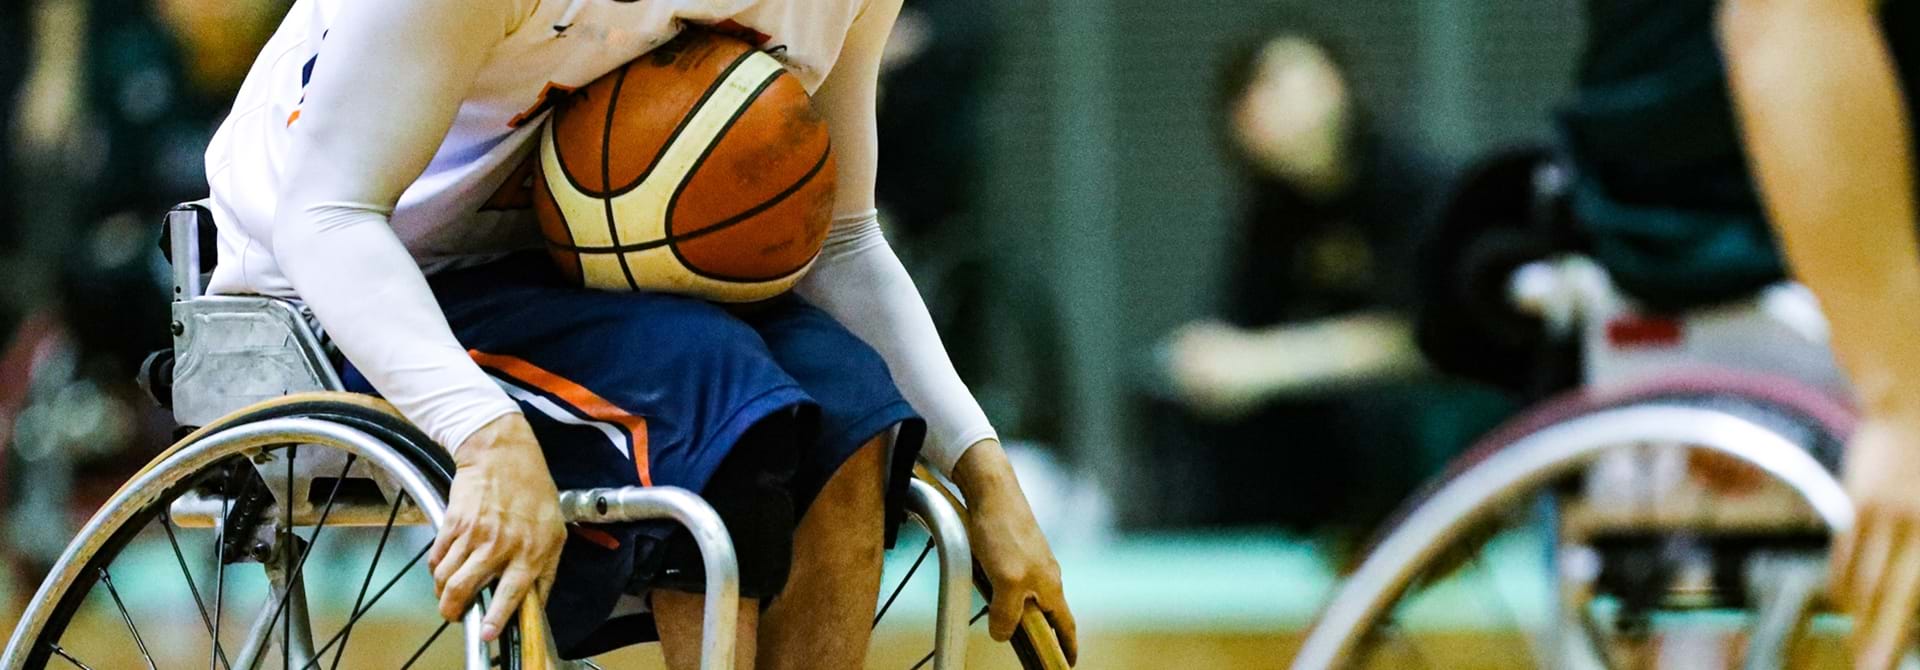 Basket Kørestol Web